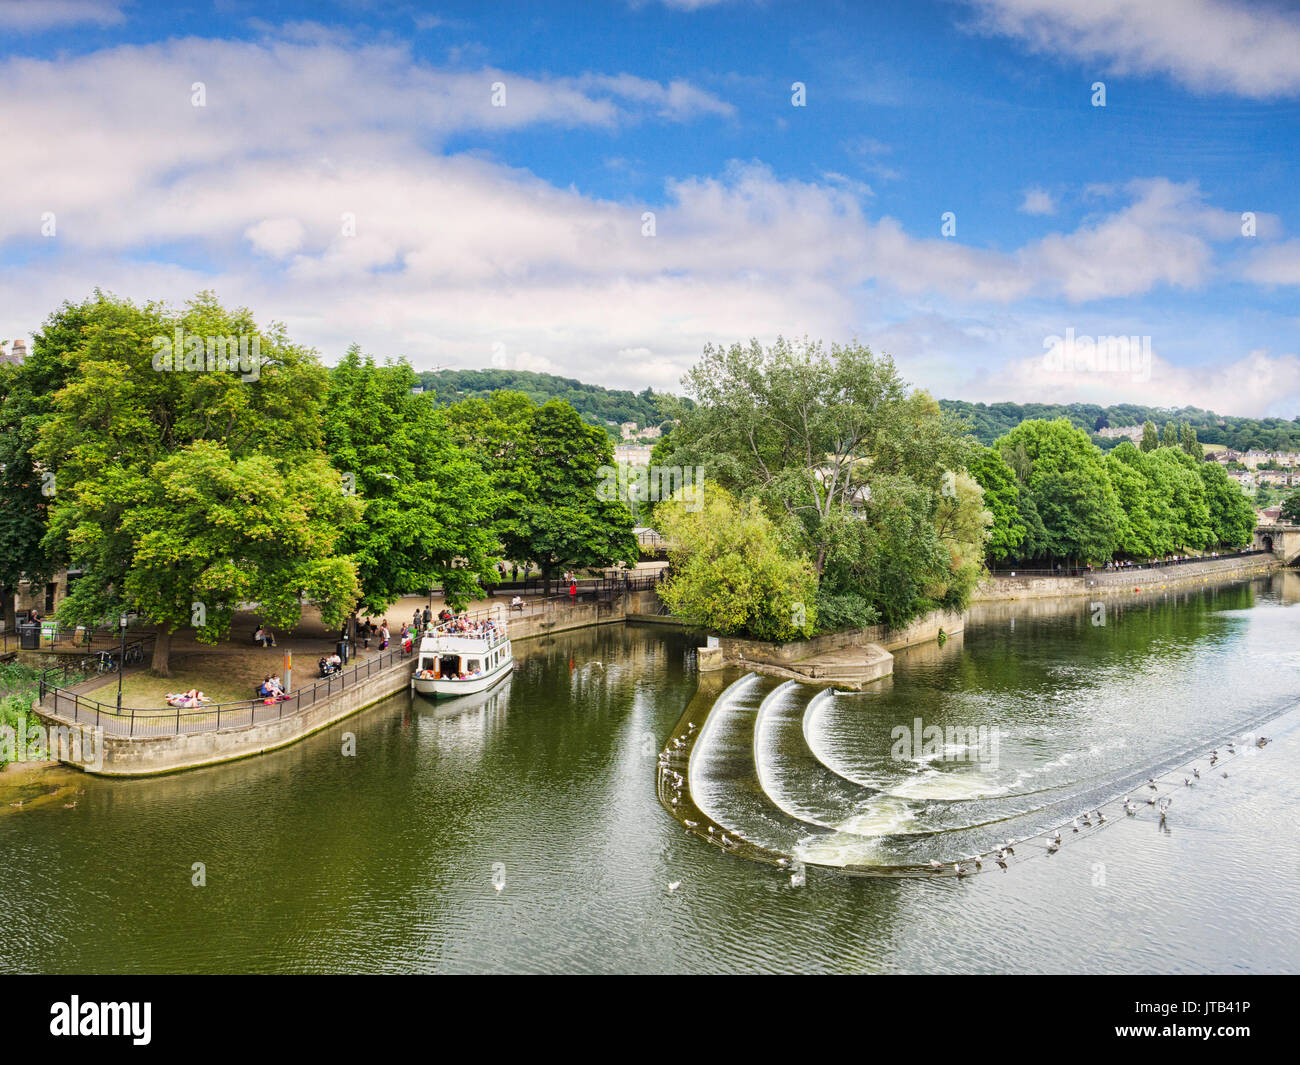 8 Juillet 2017 : Bath, Somerset, England, UK - Pulteney Weir, l'une des attractions de la ville, et un bateau de plaisance amarré à proximité. Banque D'Images